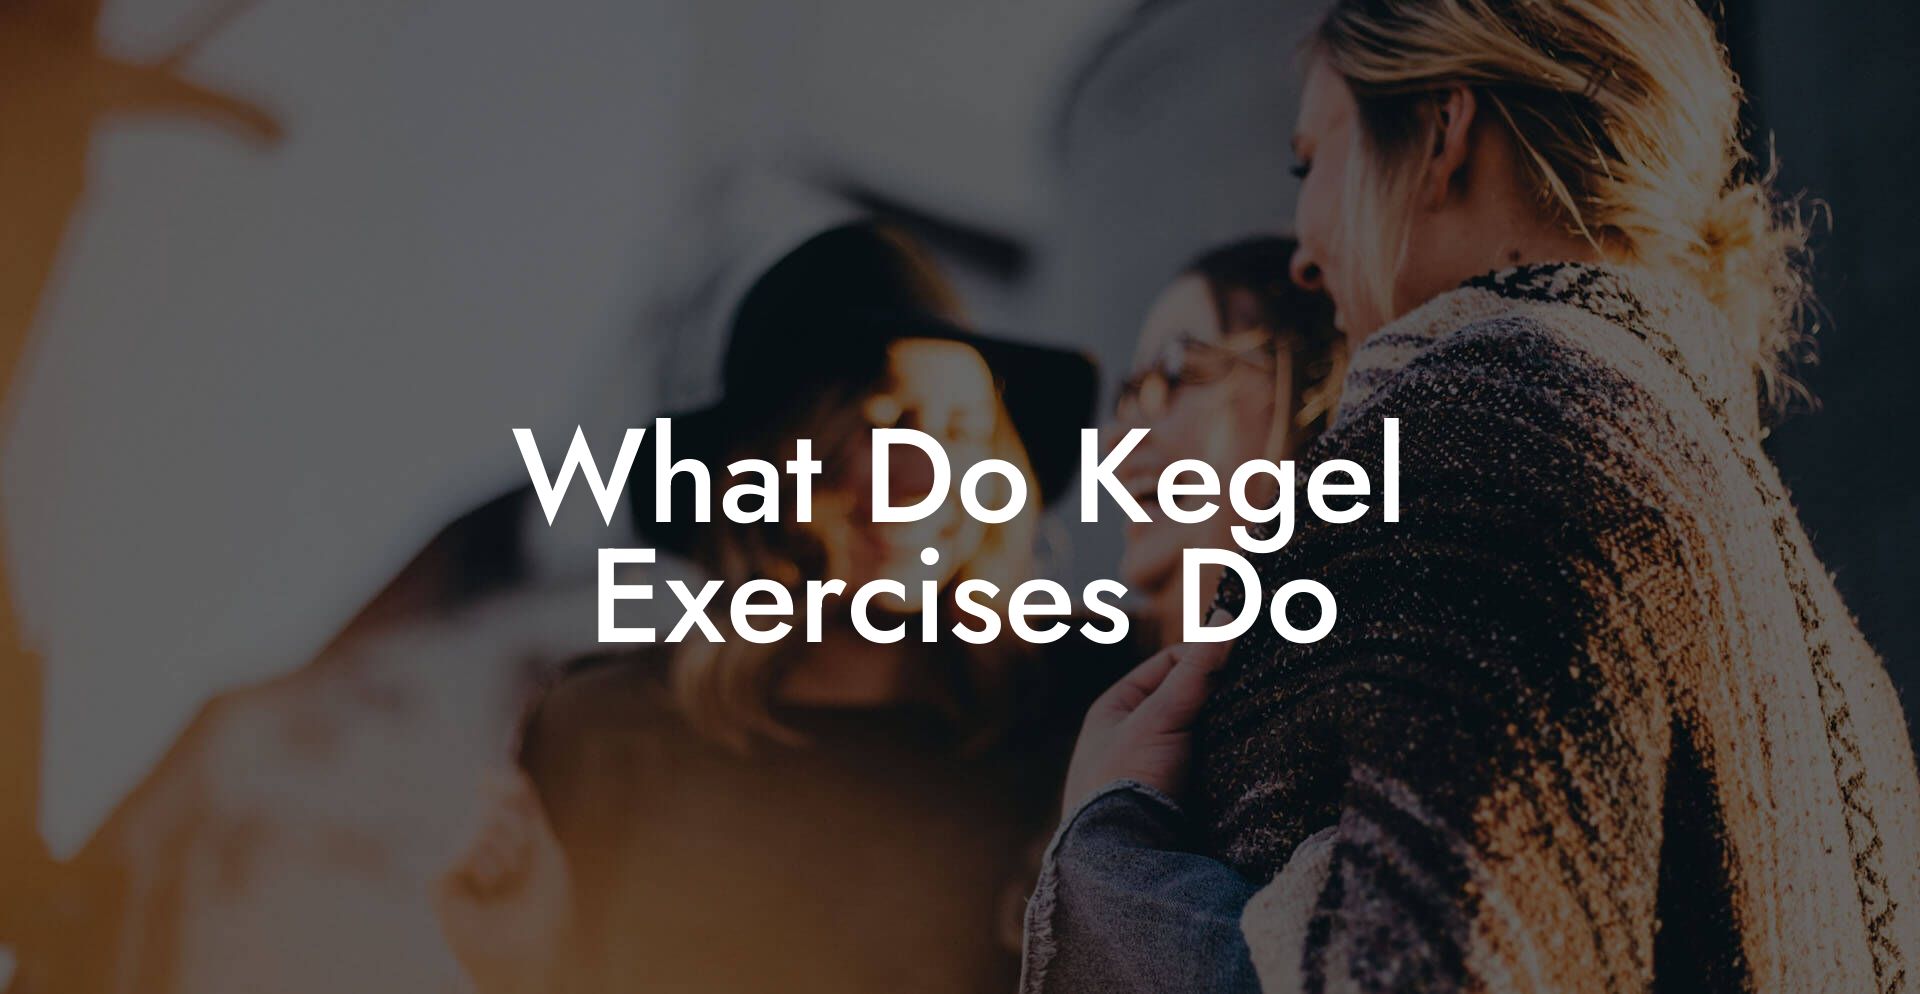 What Do Kegel Exercises Do